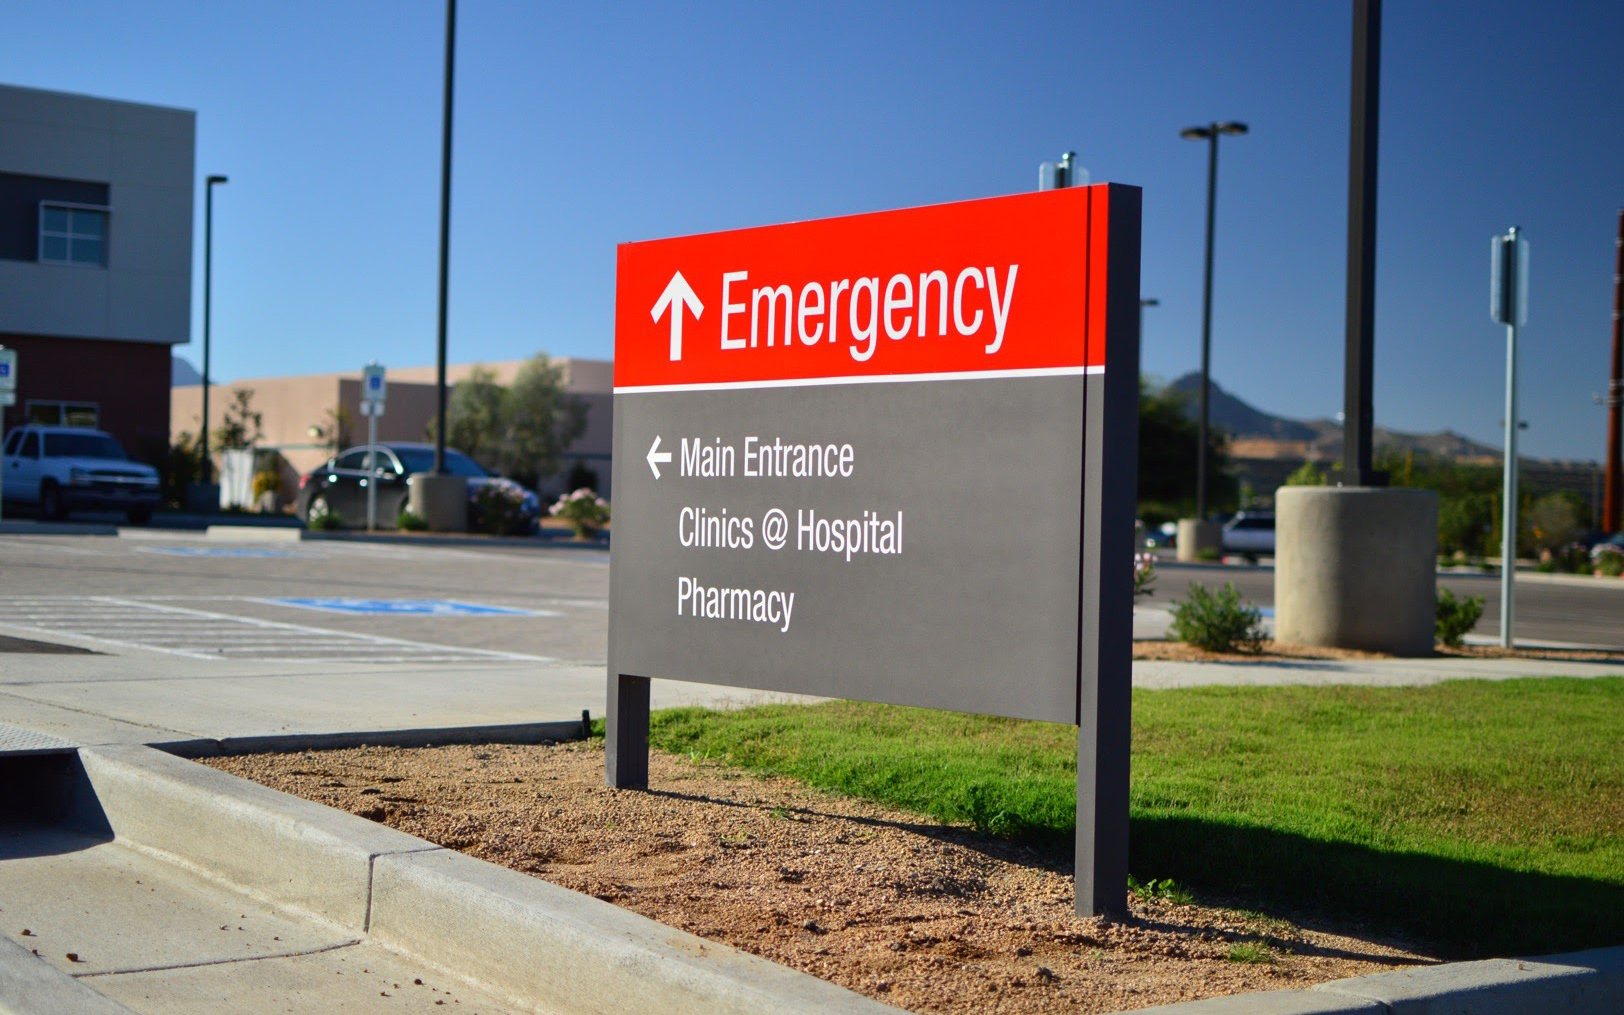 Cobre Valley Regional Medical Center